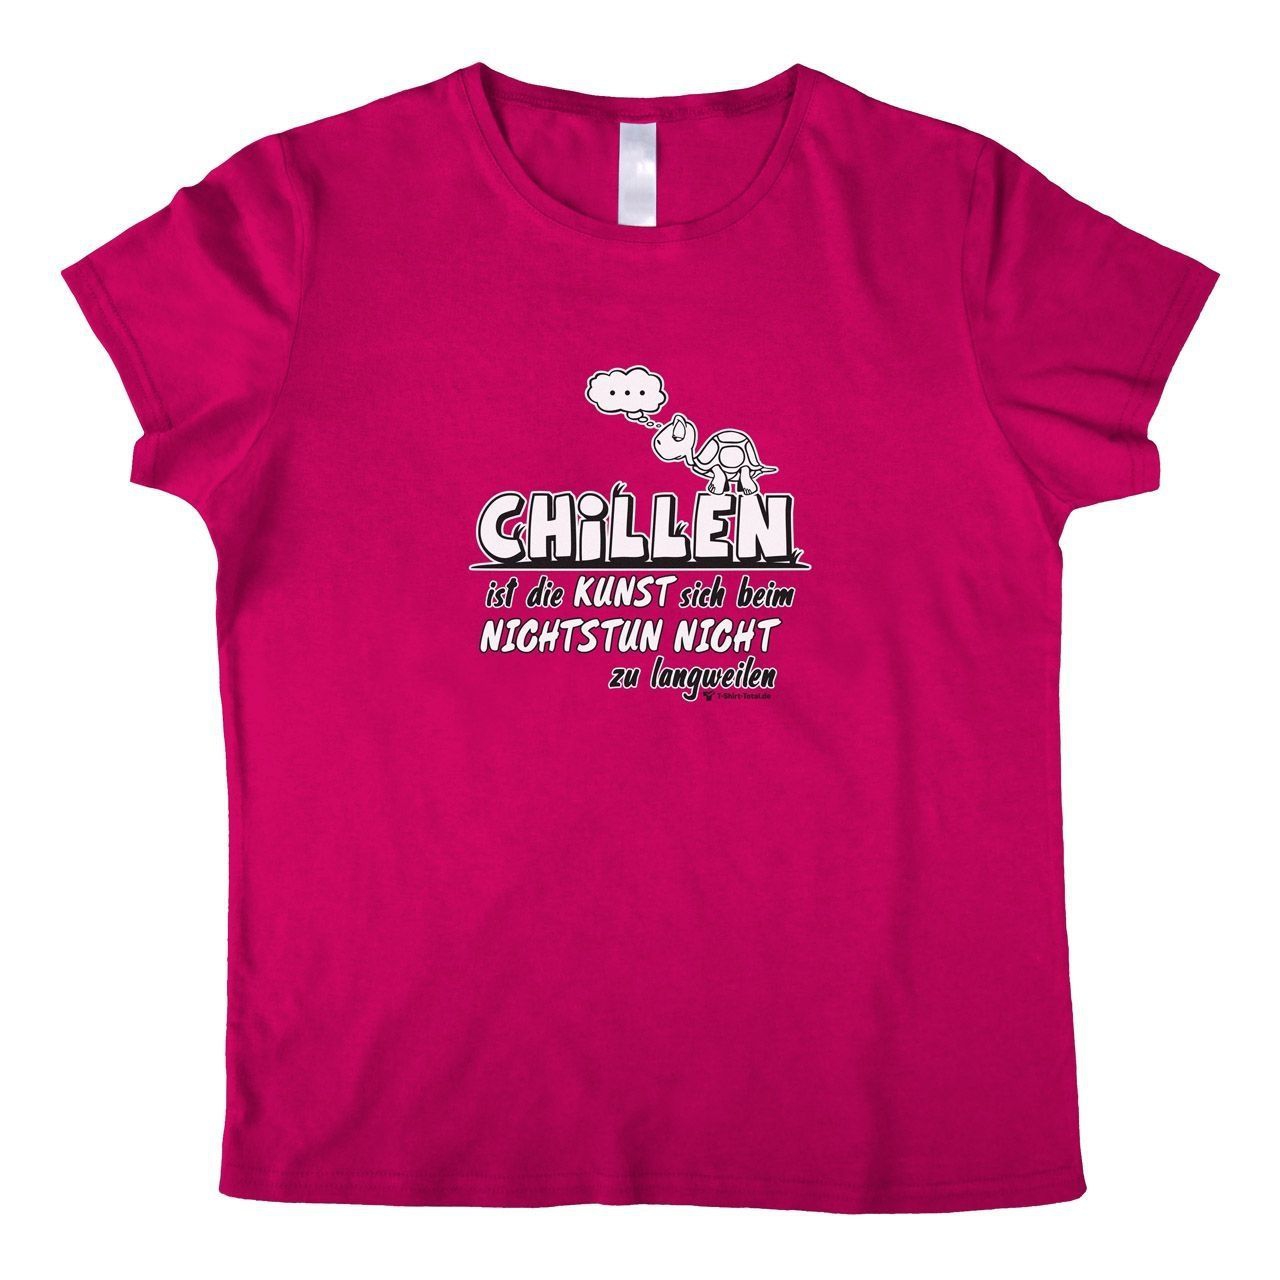 Chillen Woman T-Shirt pink Small